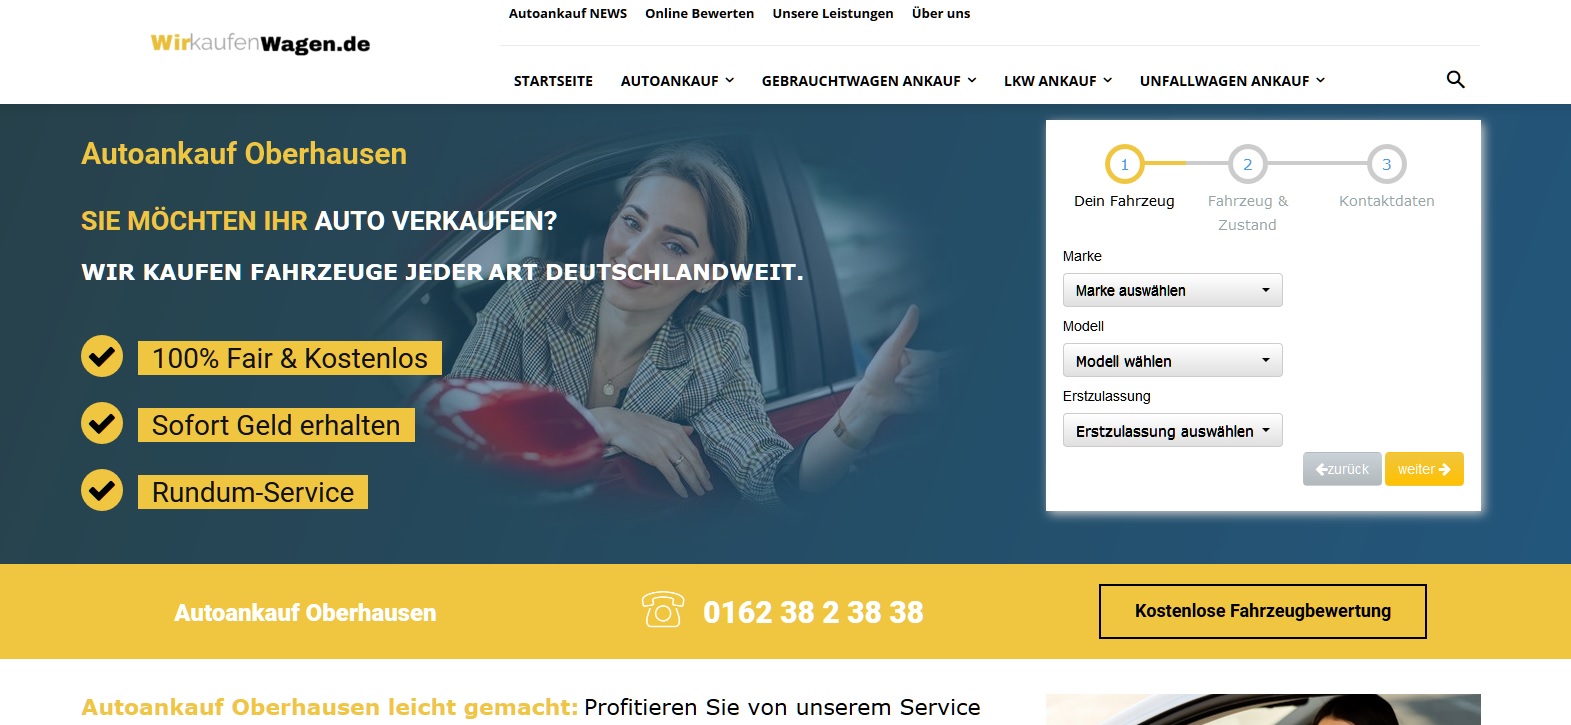 Auto verkaufen in Schwerin - Gebrauchtwagen online verkaufen: so einfach geht's